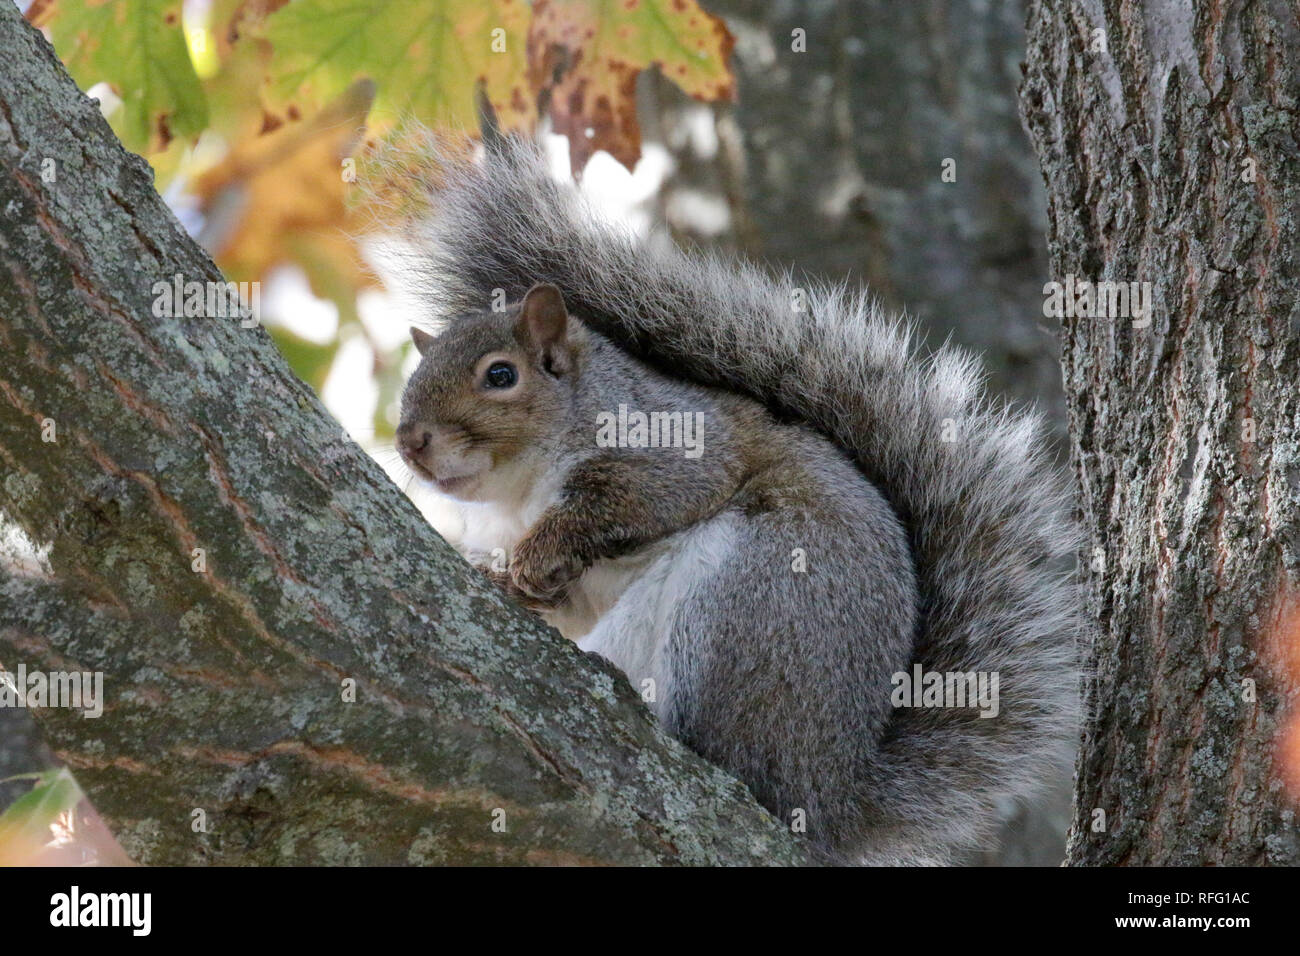 Écureuil dans la réserve naturelle dans l'arbre Banque D'Images